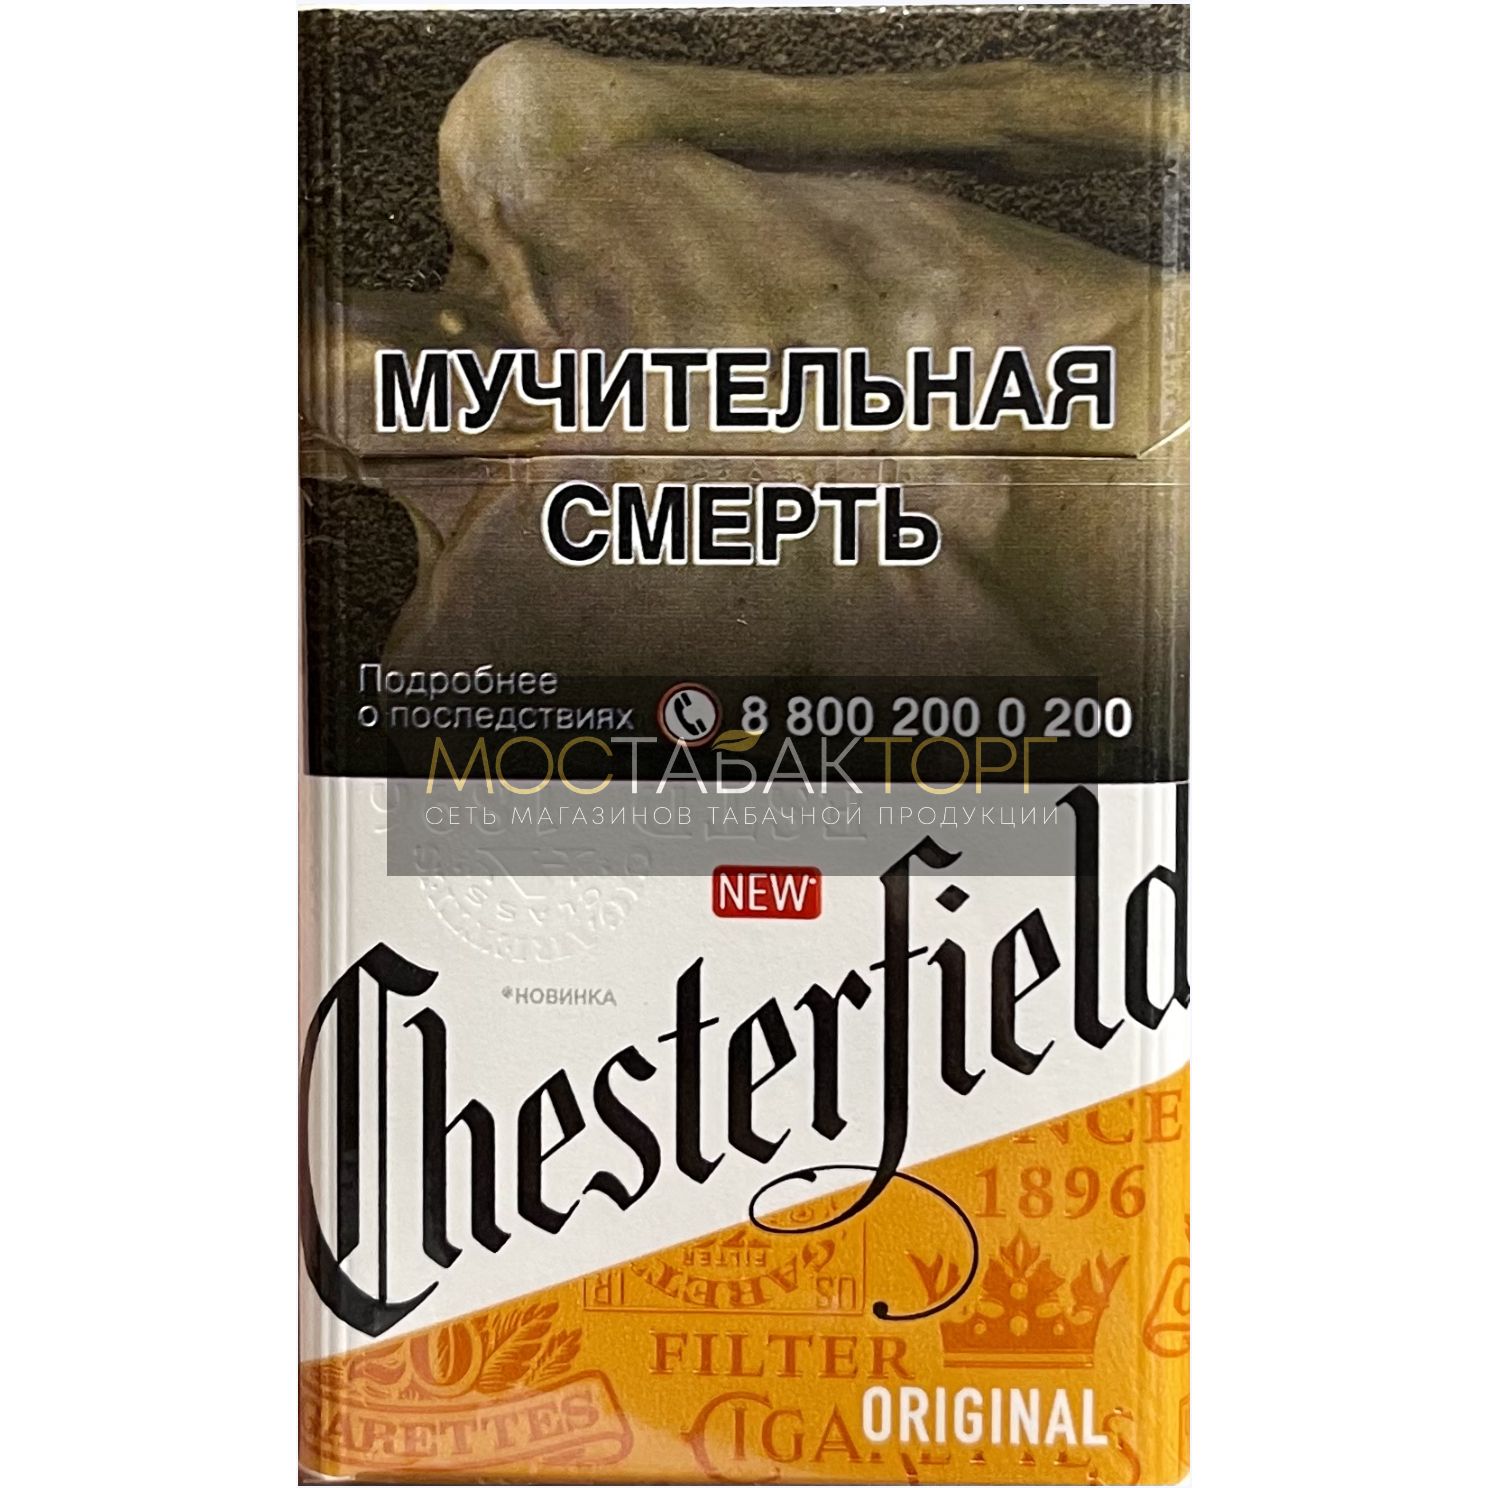 Сигареты Chesterfield Original